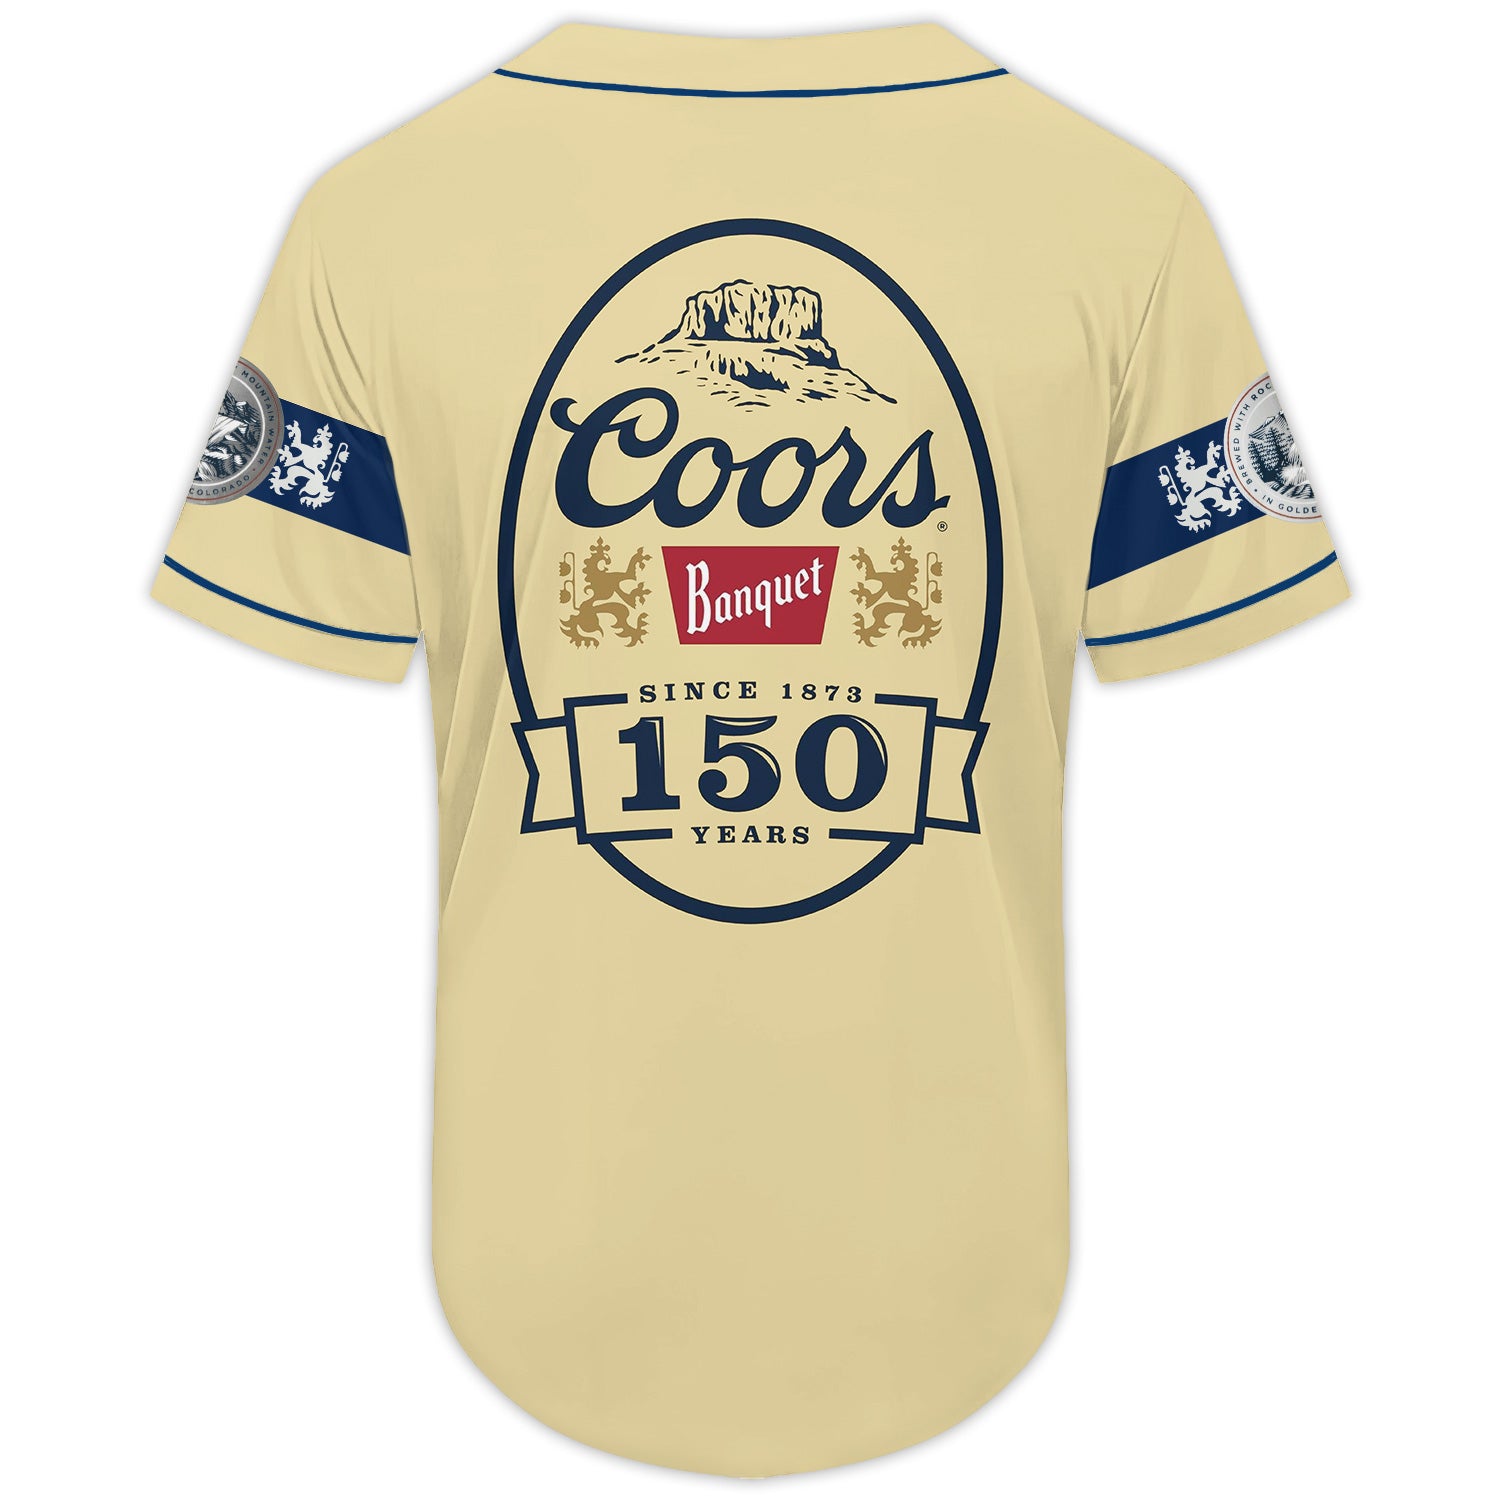 Coors Banquet Since 1873 Baseball Jersey